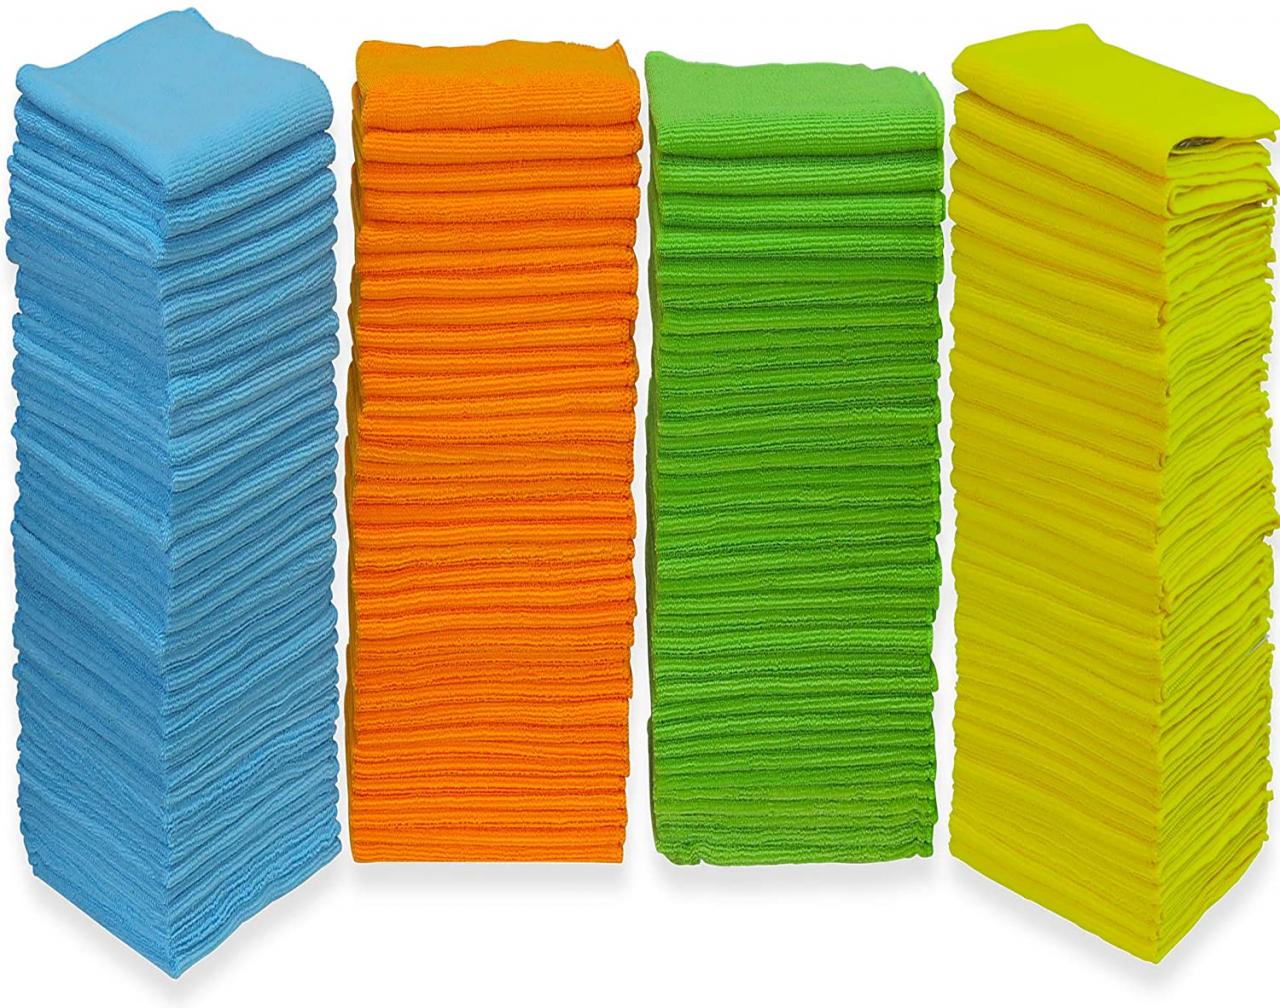 Buy 150 Pack - SimpleHouseware Microfiber Cleaning Cloth, 4 Colors Online  in Hong Kong. B01NBBYU7Z